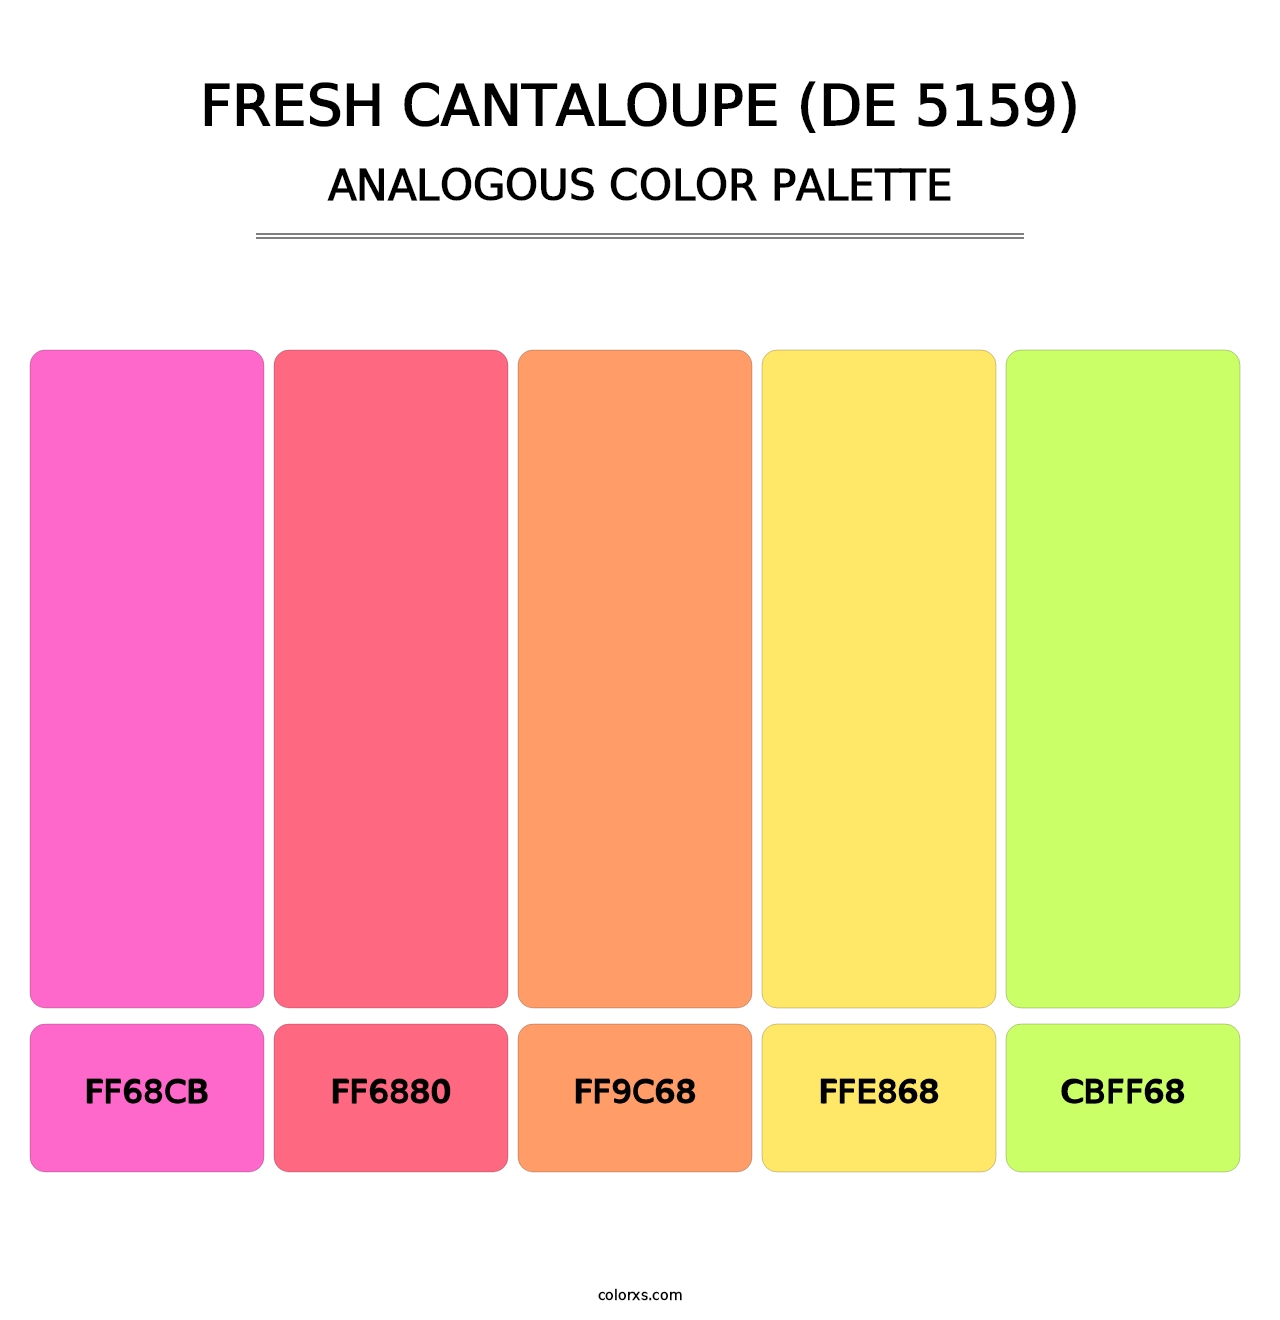 Fresh Cantaloupe (DE 5159) - Analogous Color Palette